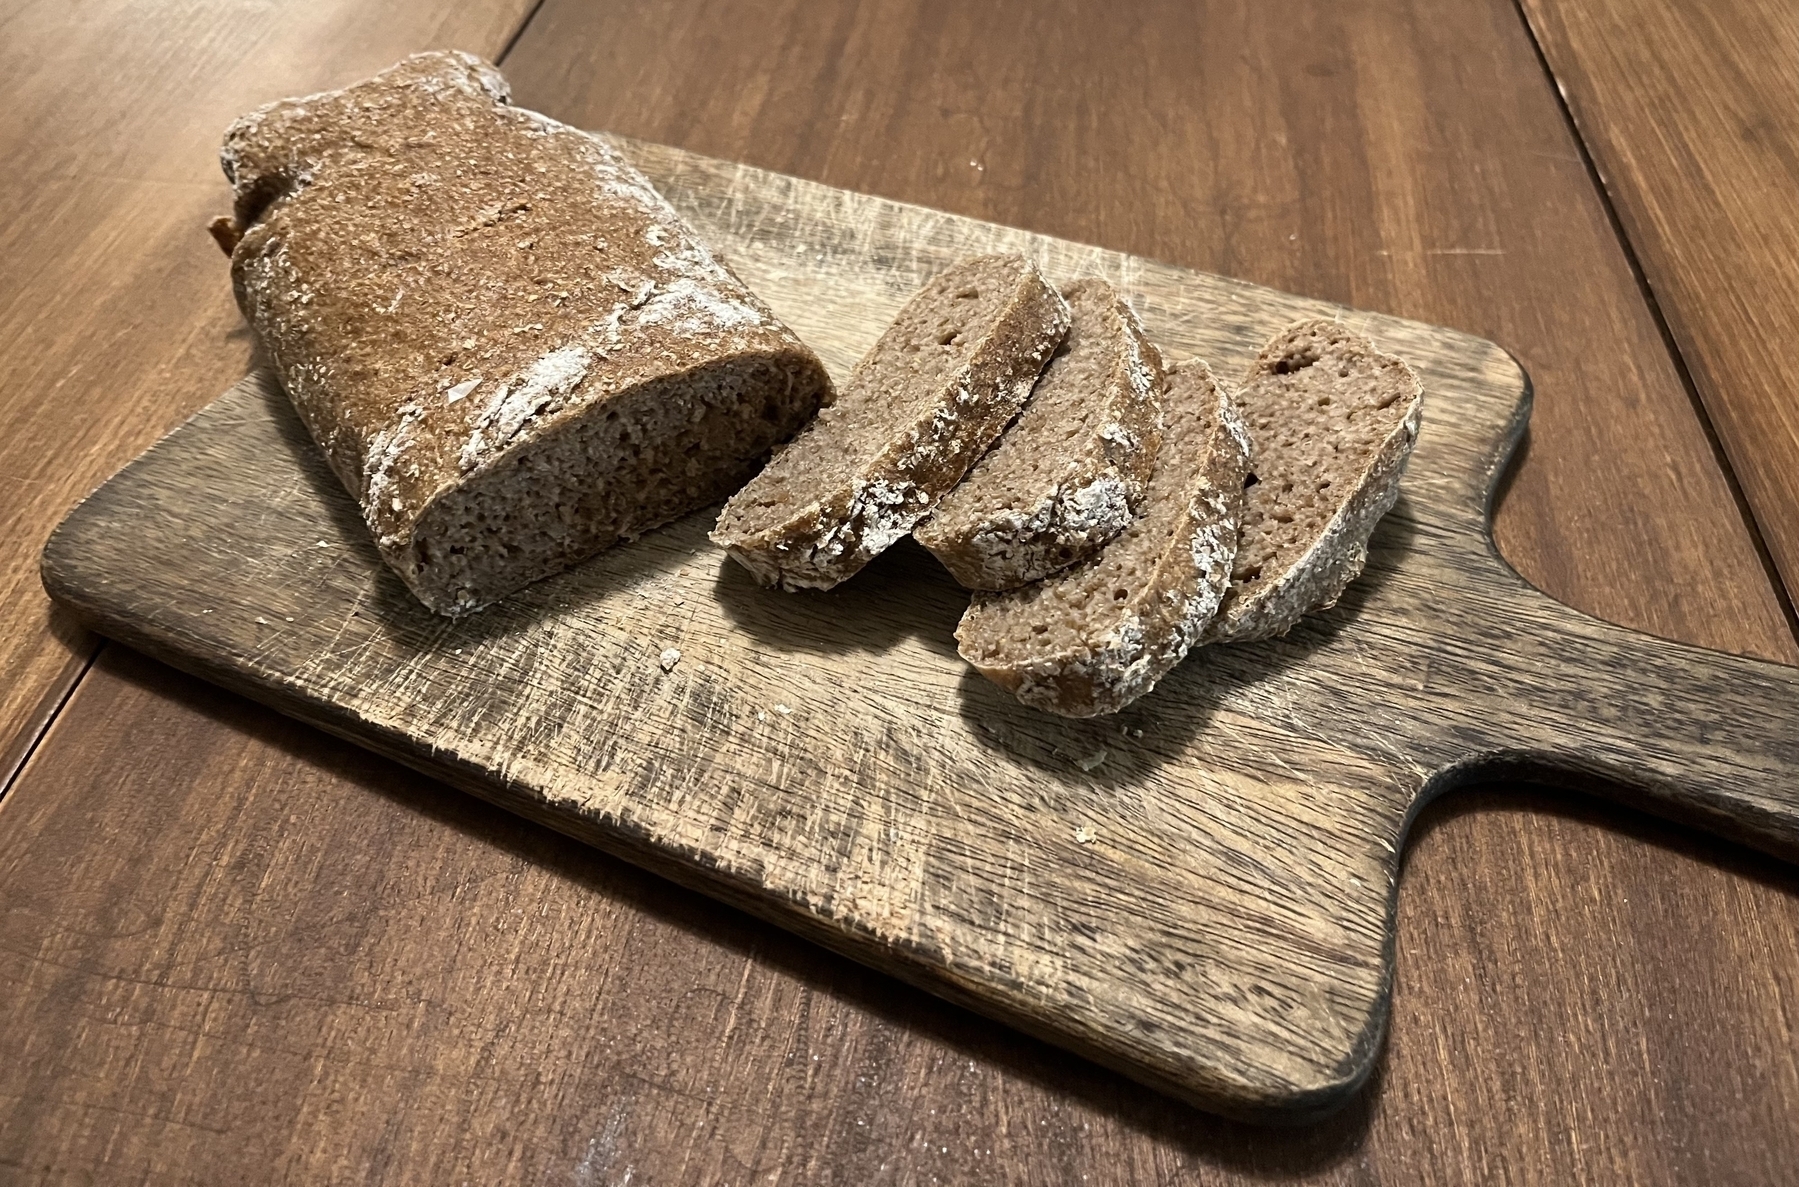 Sliced dark bread sitting on a wooden cutting board